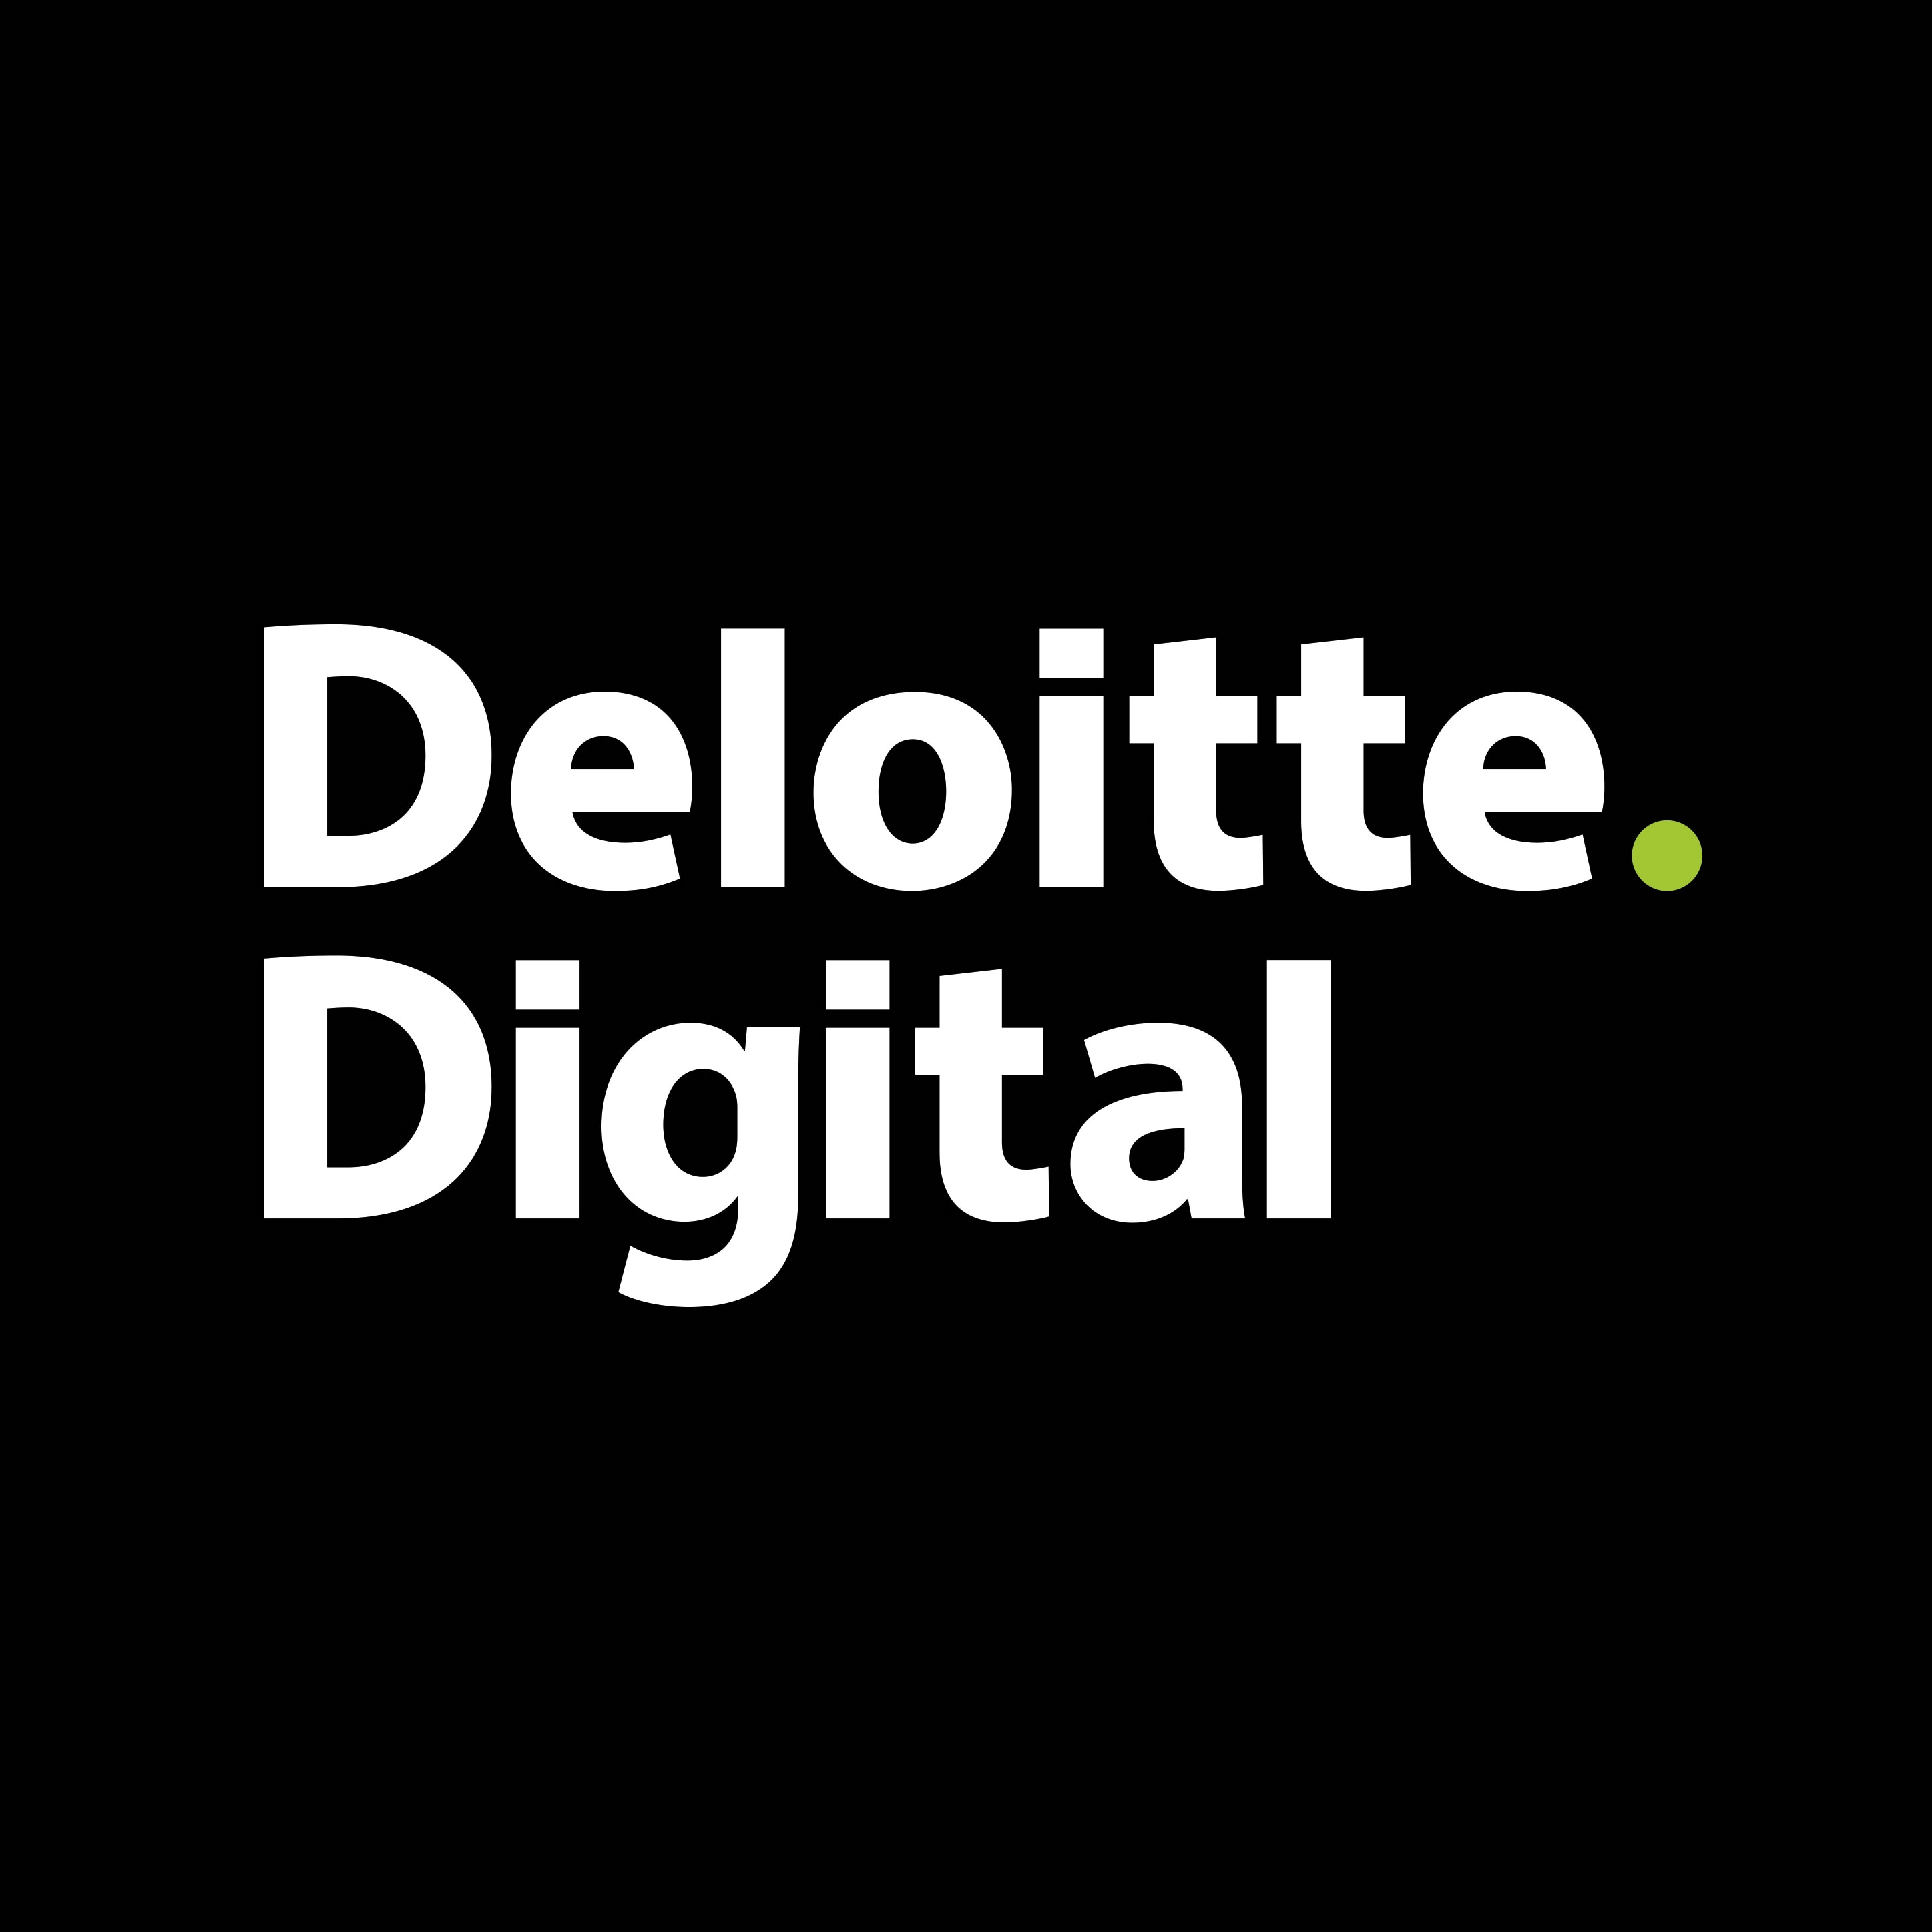 Deloitte Digital Logo - Deloitte launches Deloitte Digital in Luxembourg. Deloitte